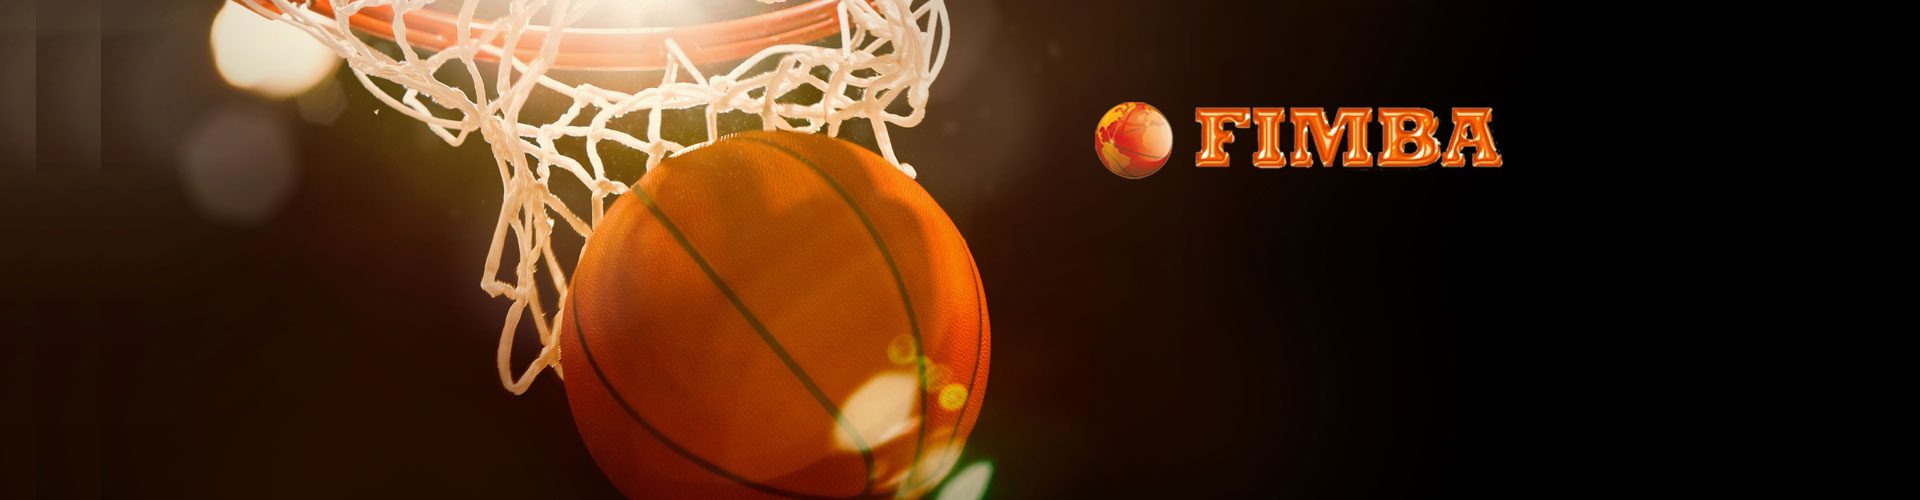 2° giorno Mondiali di Basket Montecatini Terme – tutte le foto